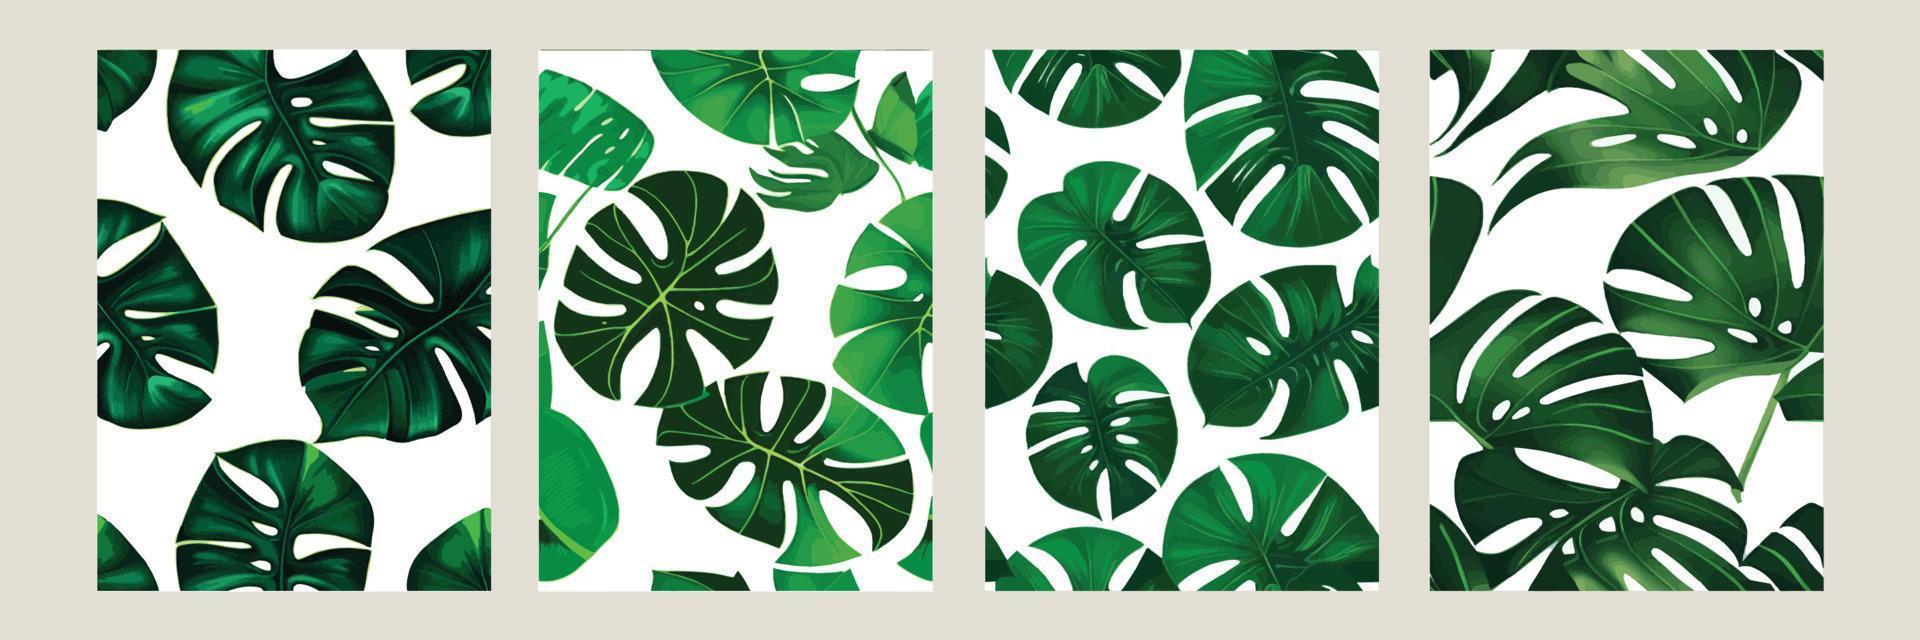 grüne Monstera als Muster auf weißem Hintergrund. exotisches Muster mit tropischen Blättern. Vektor-Illustration. Reihe von quadratischen Postern vektor